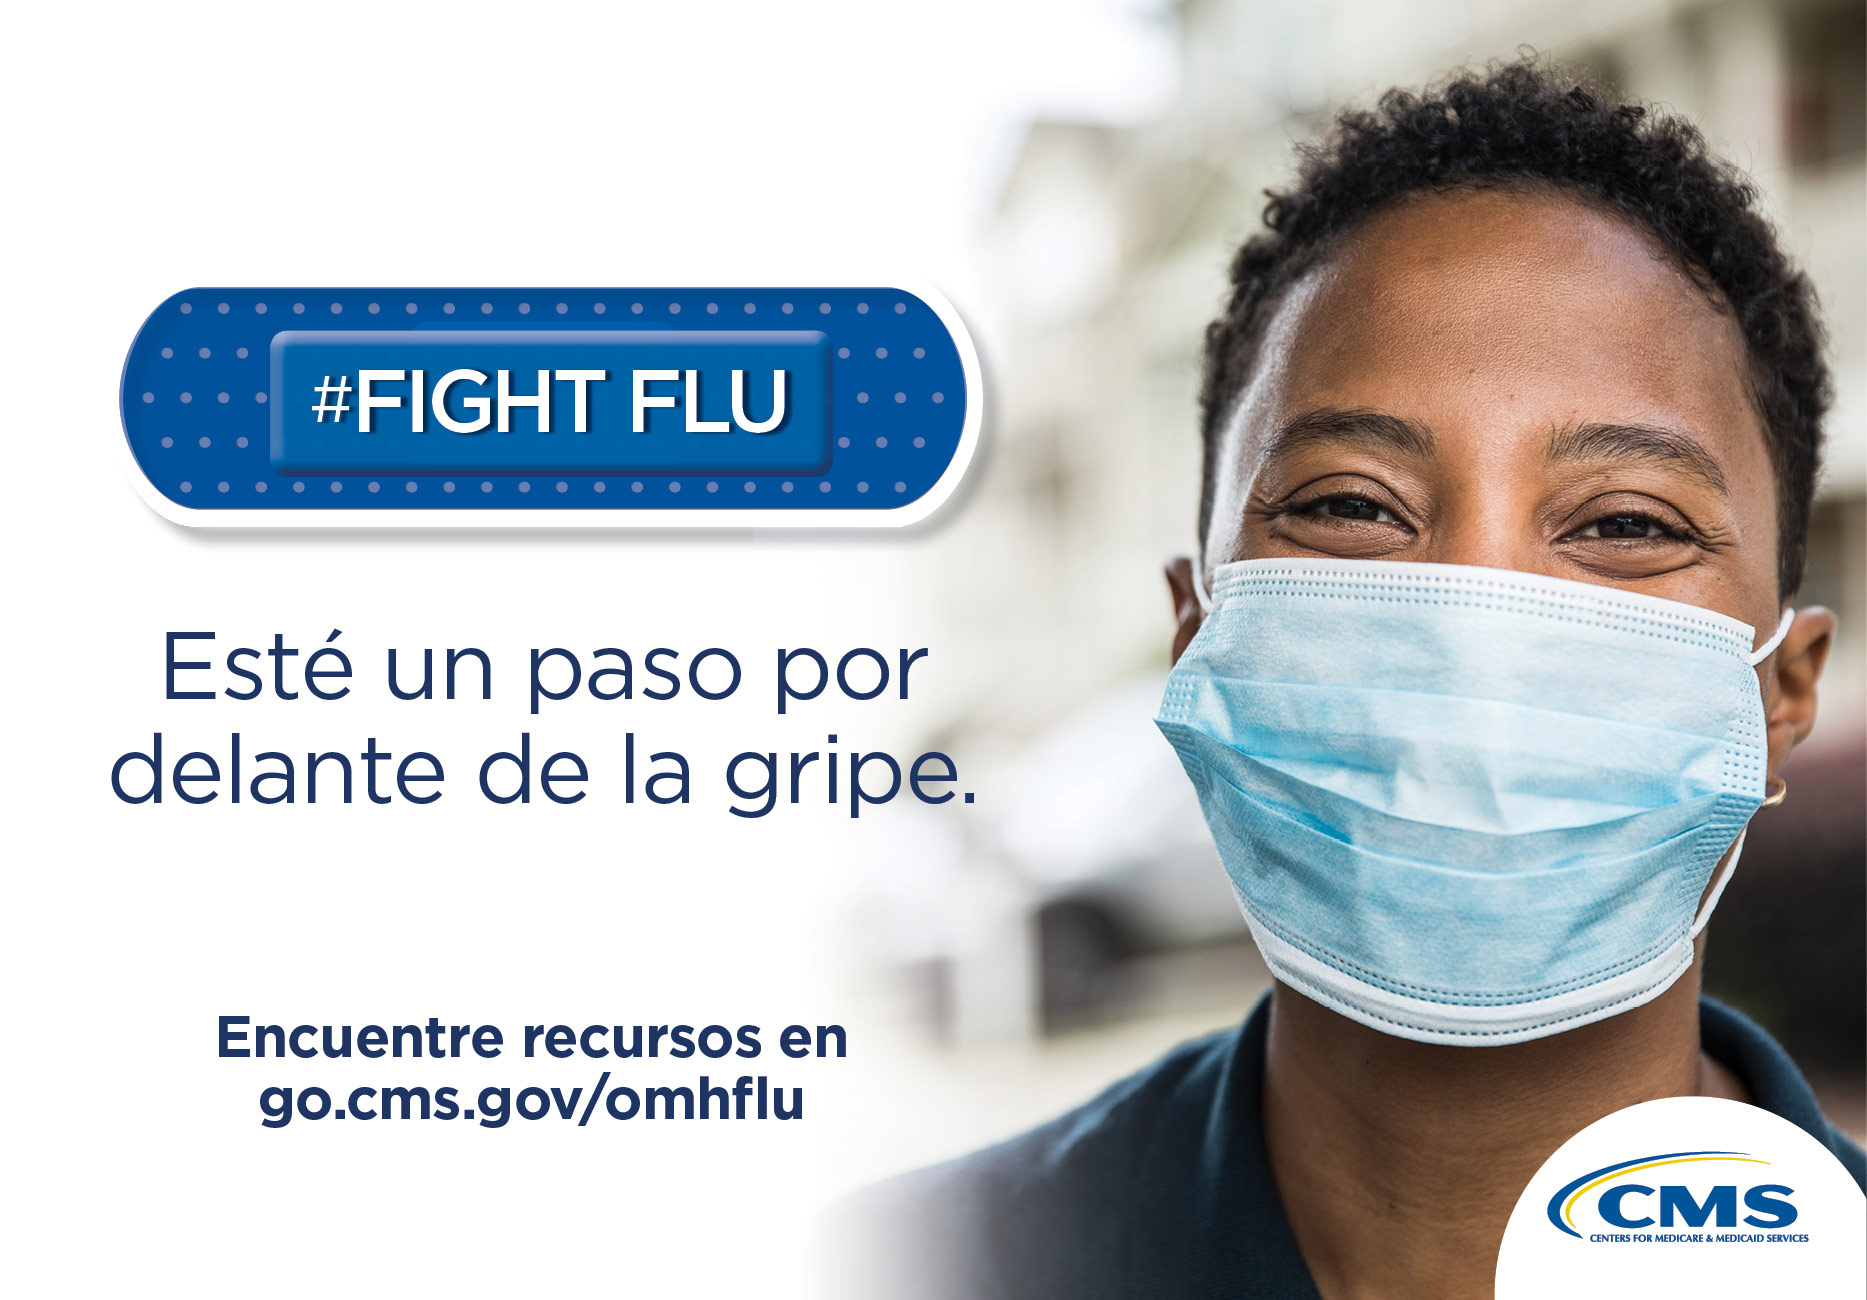  #Fight Flu.  Esté un paso por delante de la gripe.  Encuentre recursos en go.cms.gov/omhflu